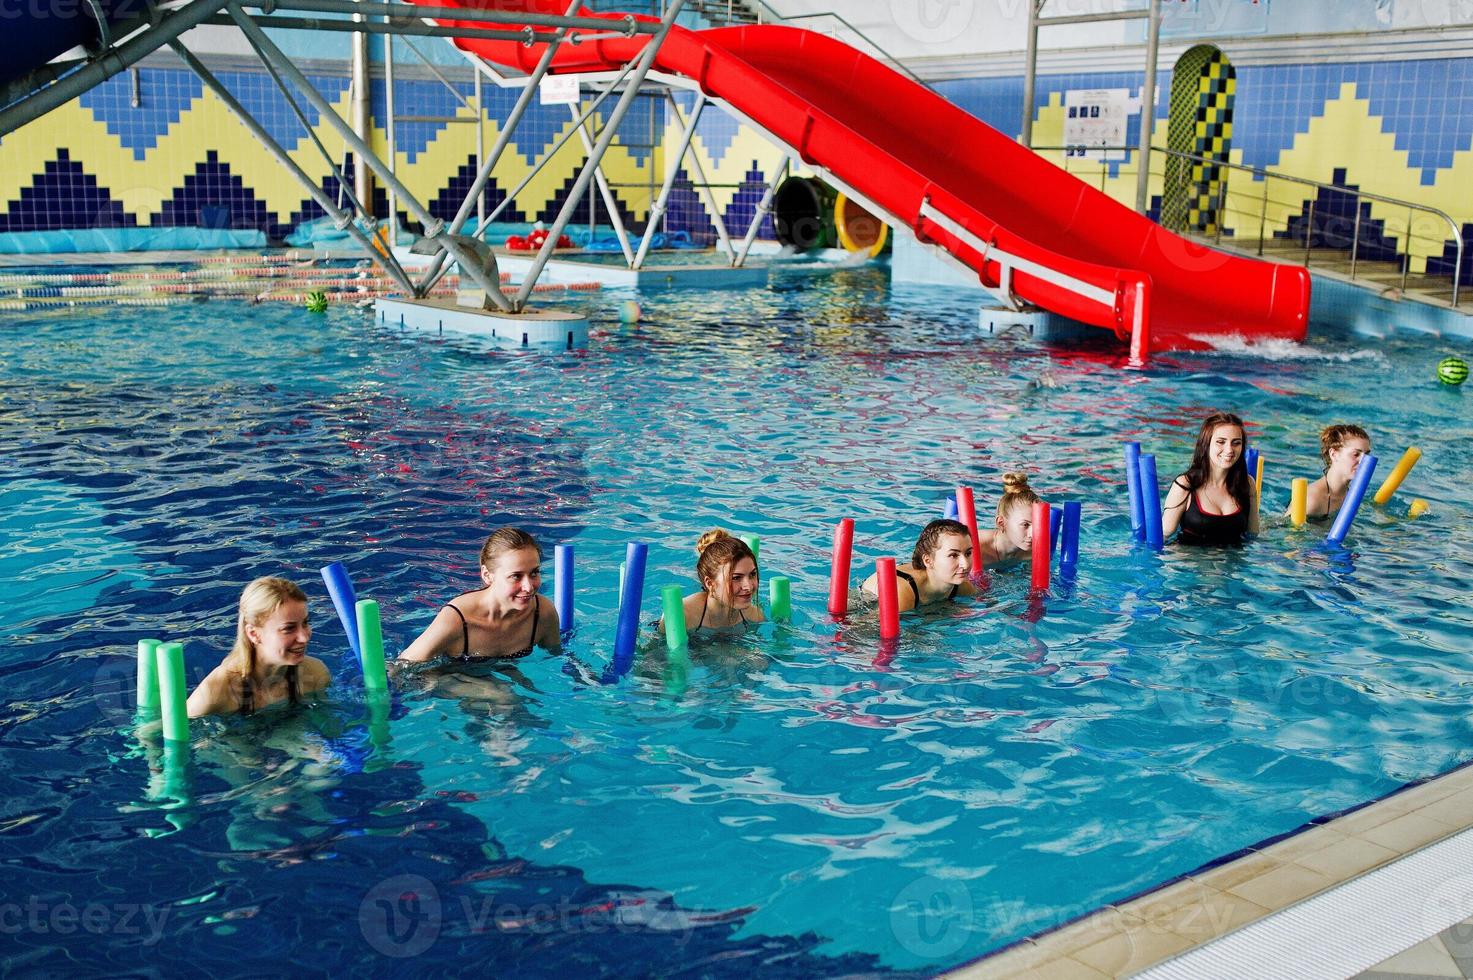 grupo de fitness de chicas haciendo ejercicios aeróbicos en la piscina en el parque acuático. actividades deportivas y de ocio. foto